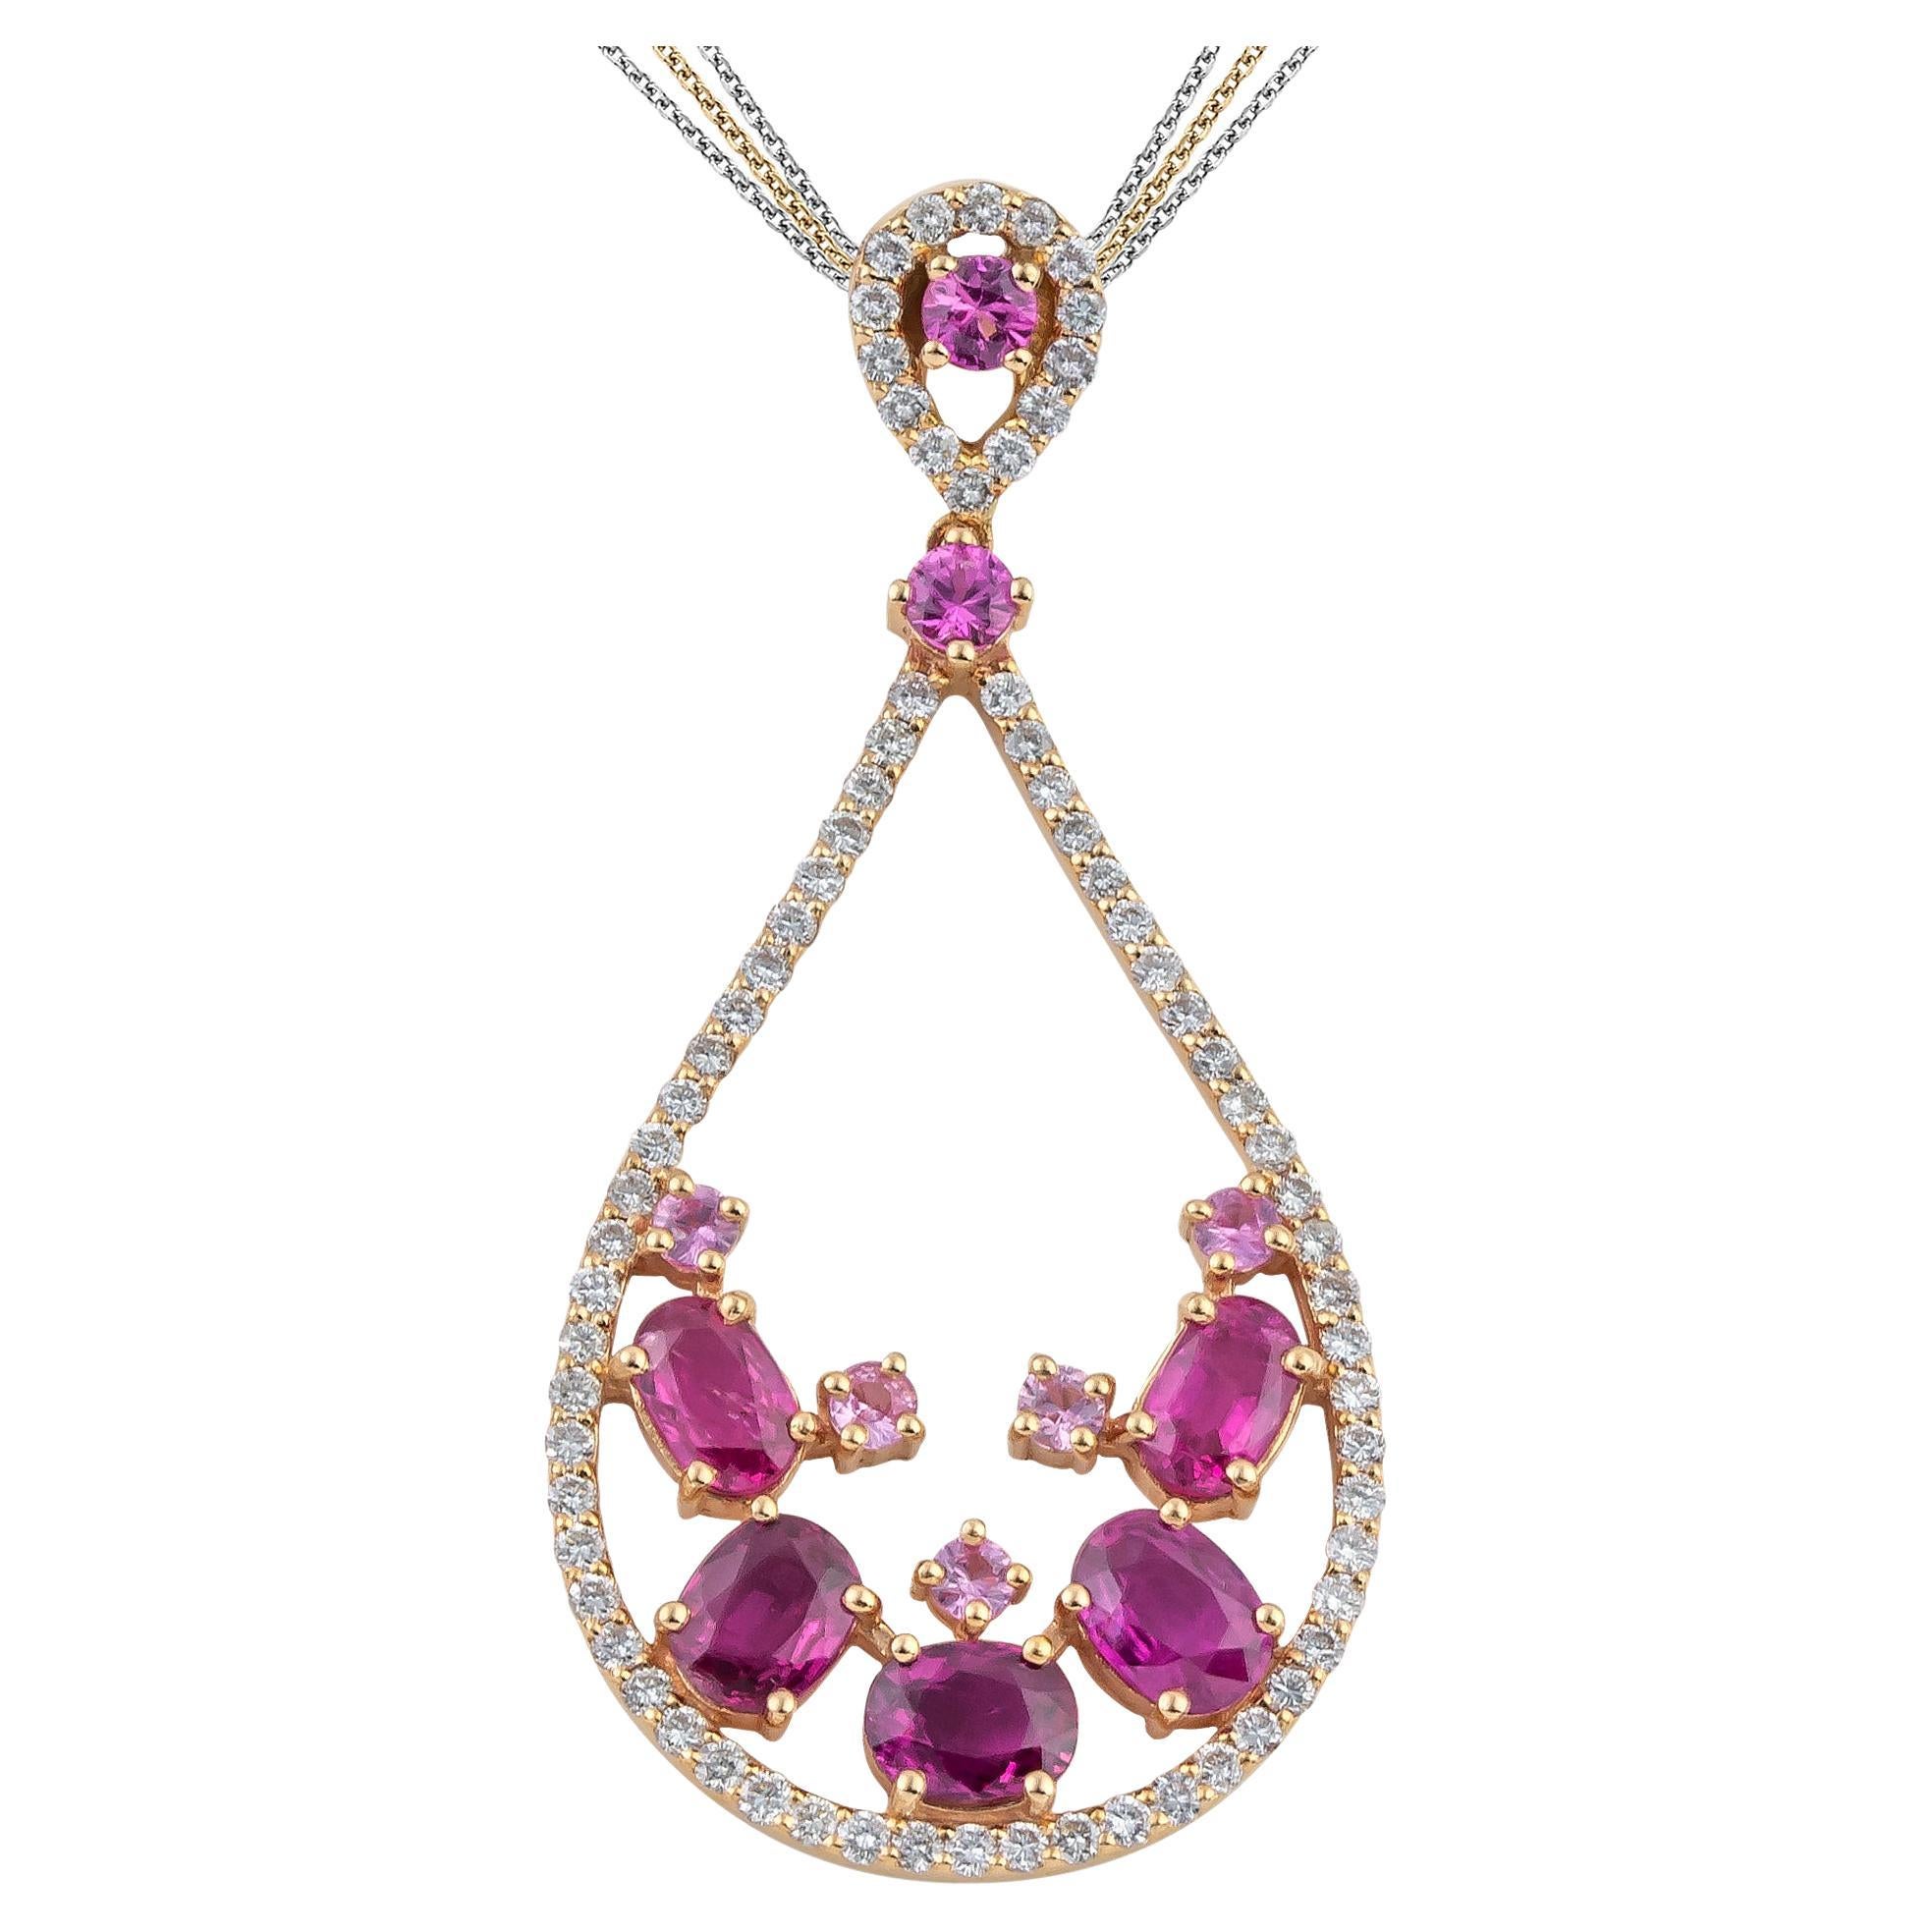 Nicofilimon the Jewelry Designer   Multi-Strand Necklaces